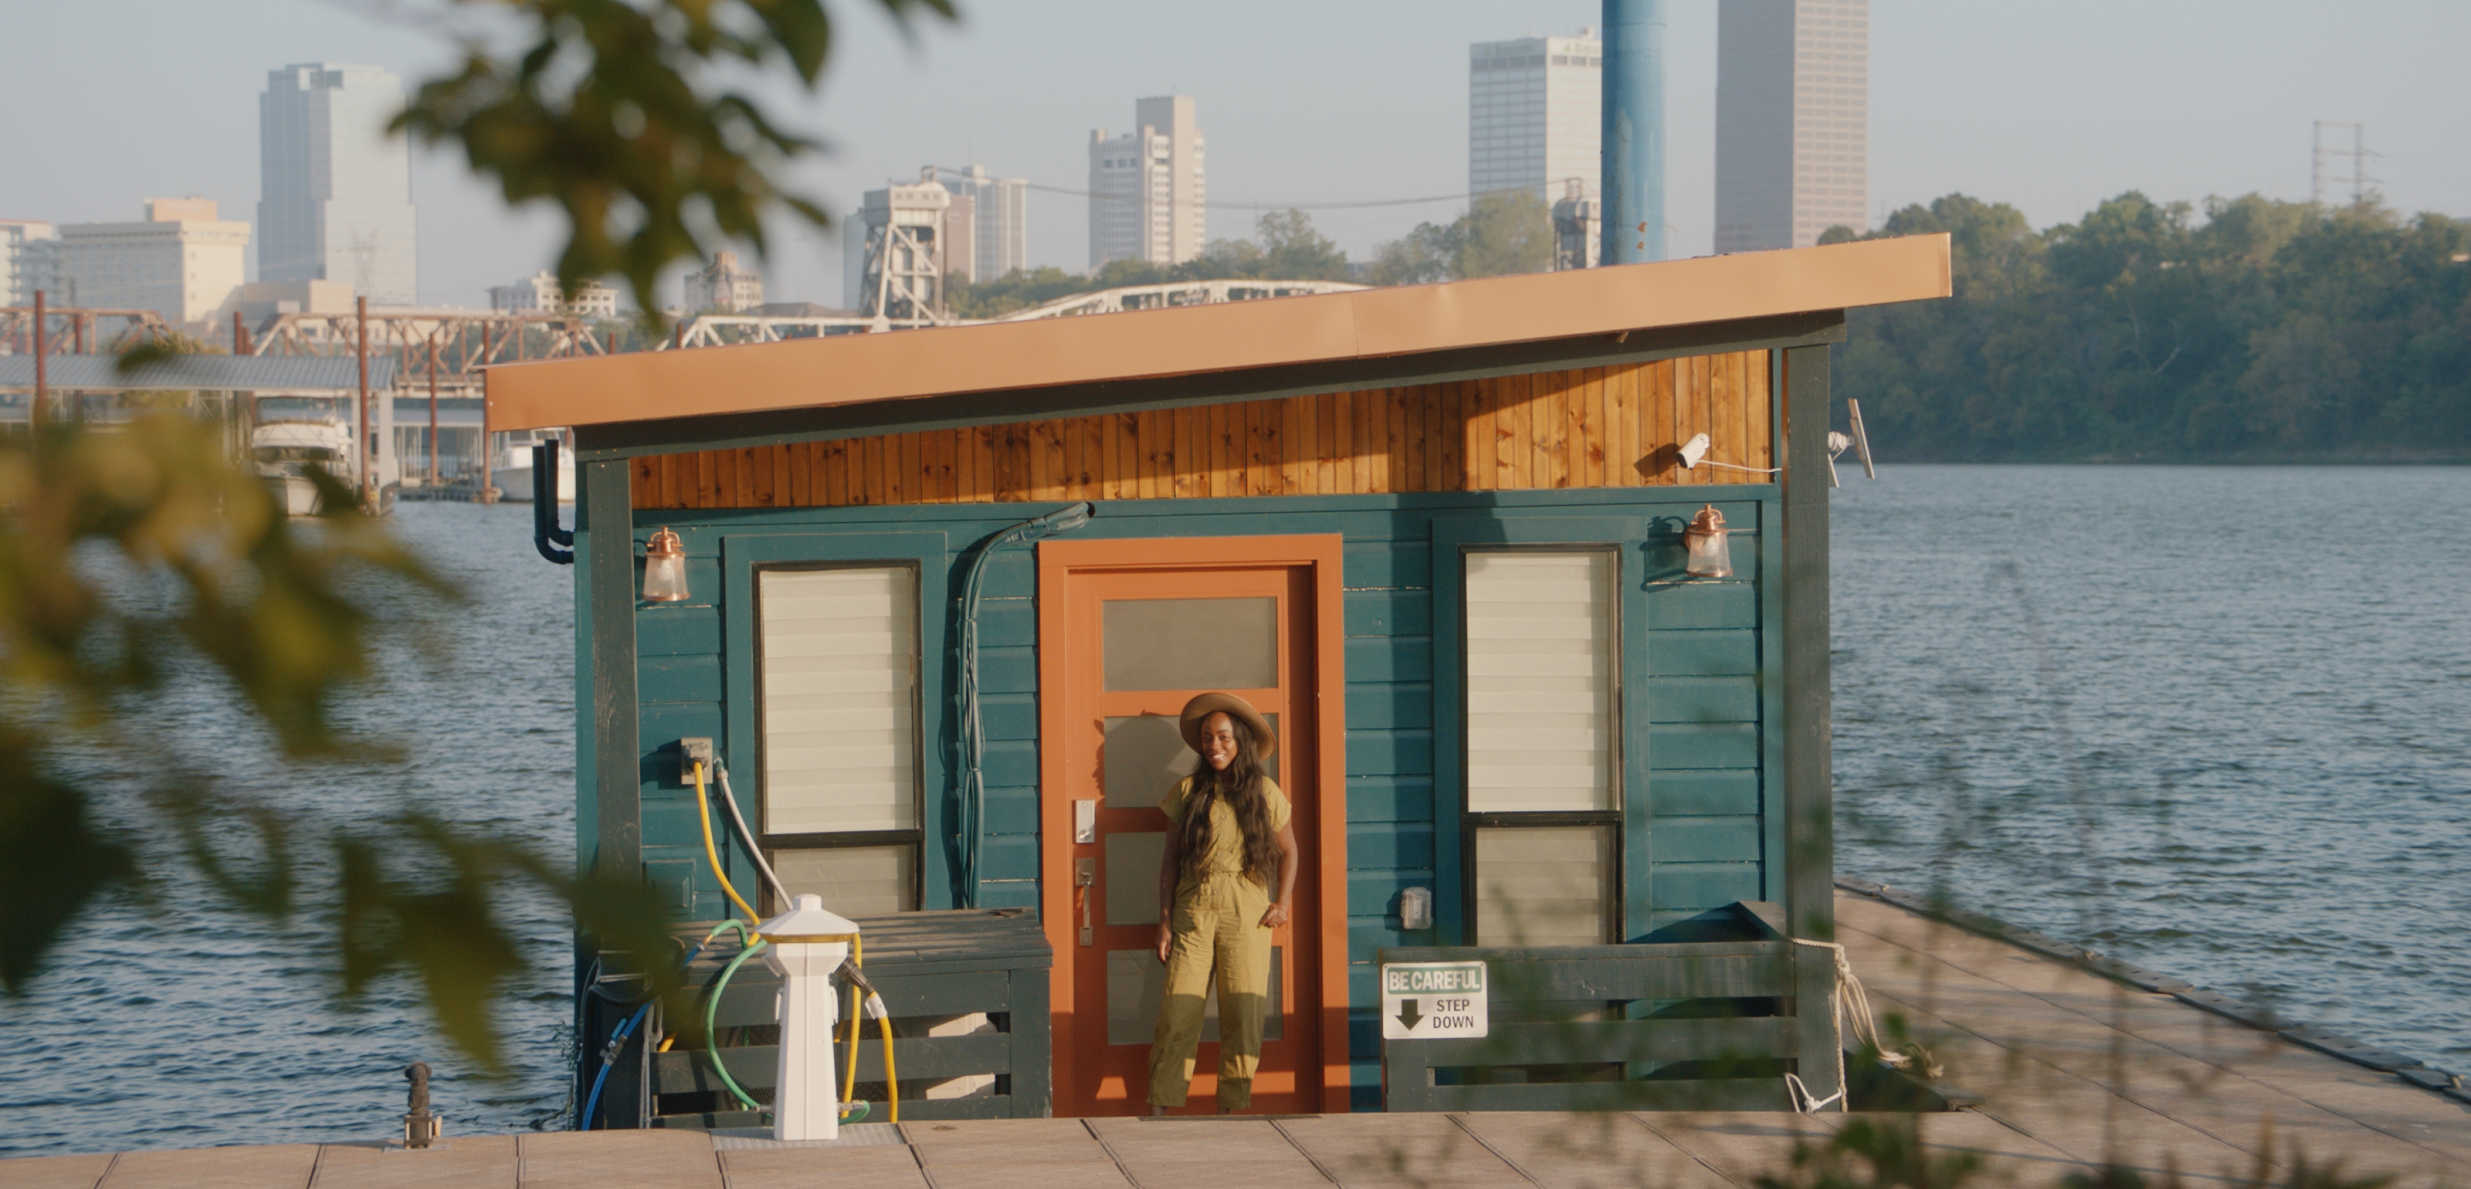 Un anfitrión sonríe frente a una casa flotante con vistas al agua, unos árboles y el paisaje urbano a lo lejos.